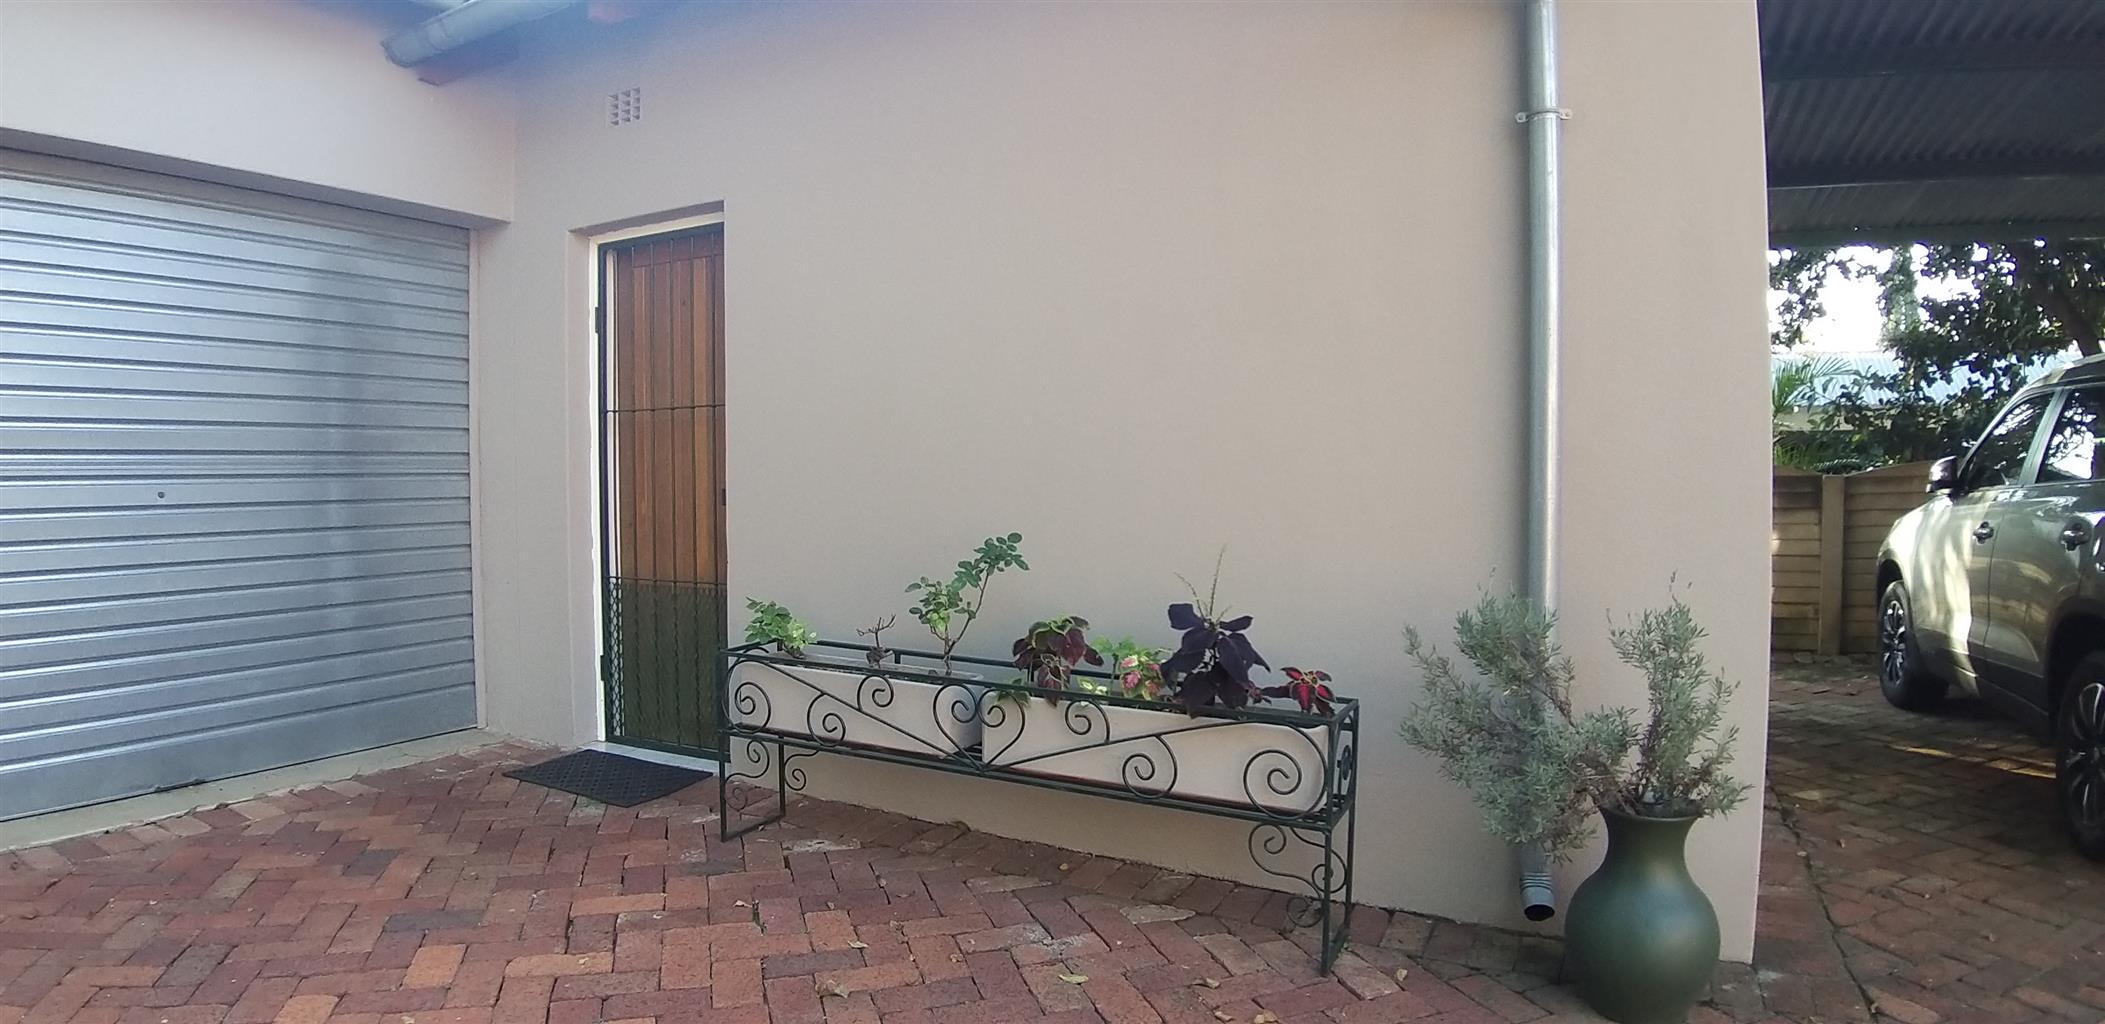 Garden Flat in Rietfontein (Single Person)